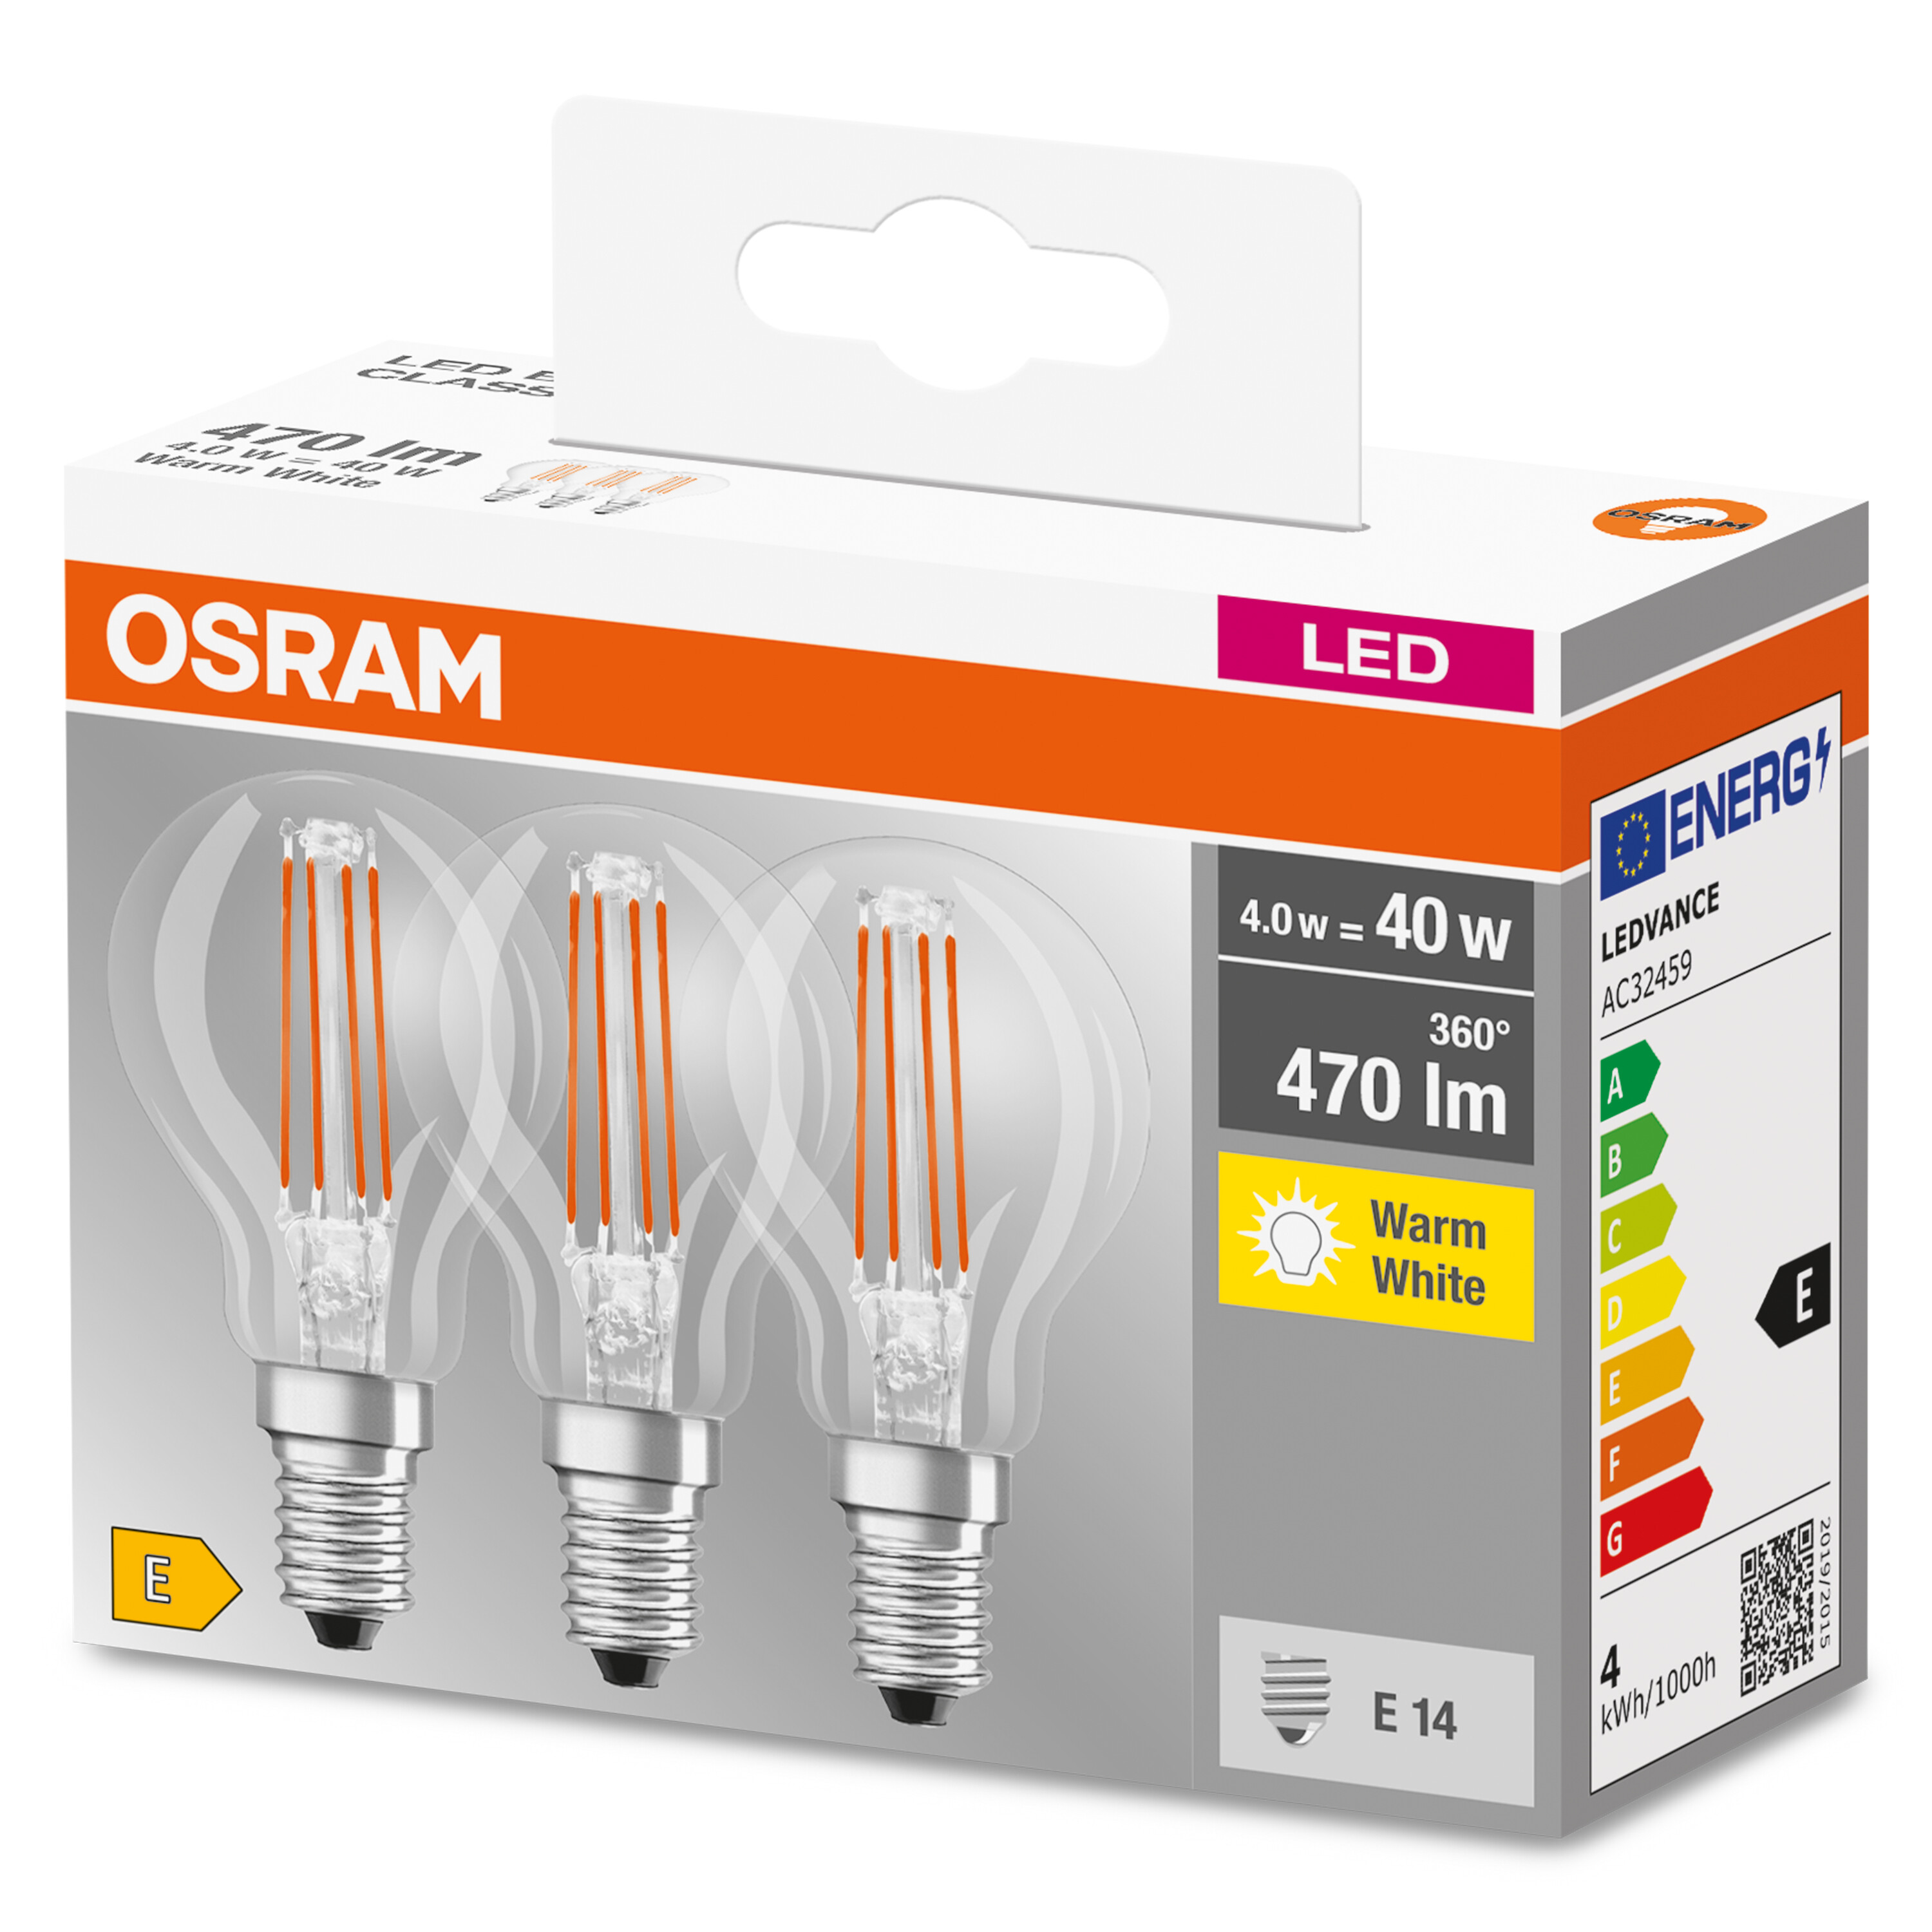 Warmweiß CLASSIC P LED OSRAM  Lumen Lampe 470 LED BASE